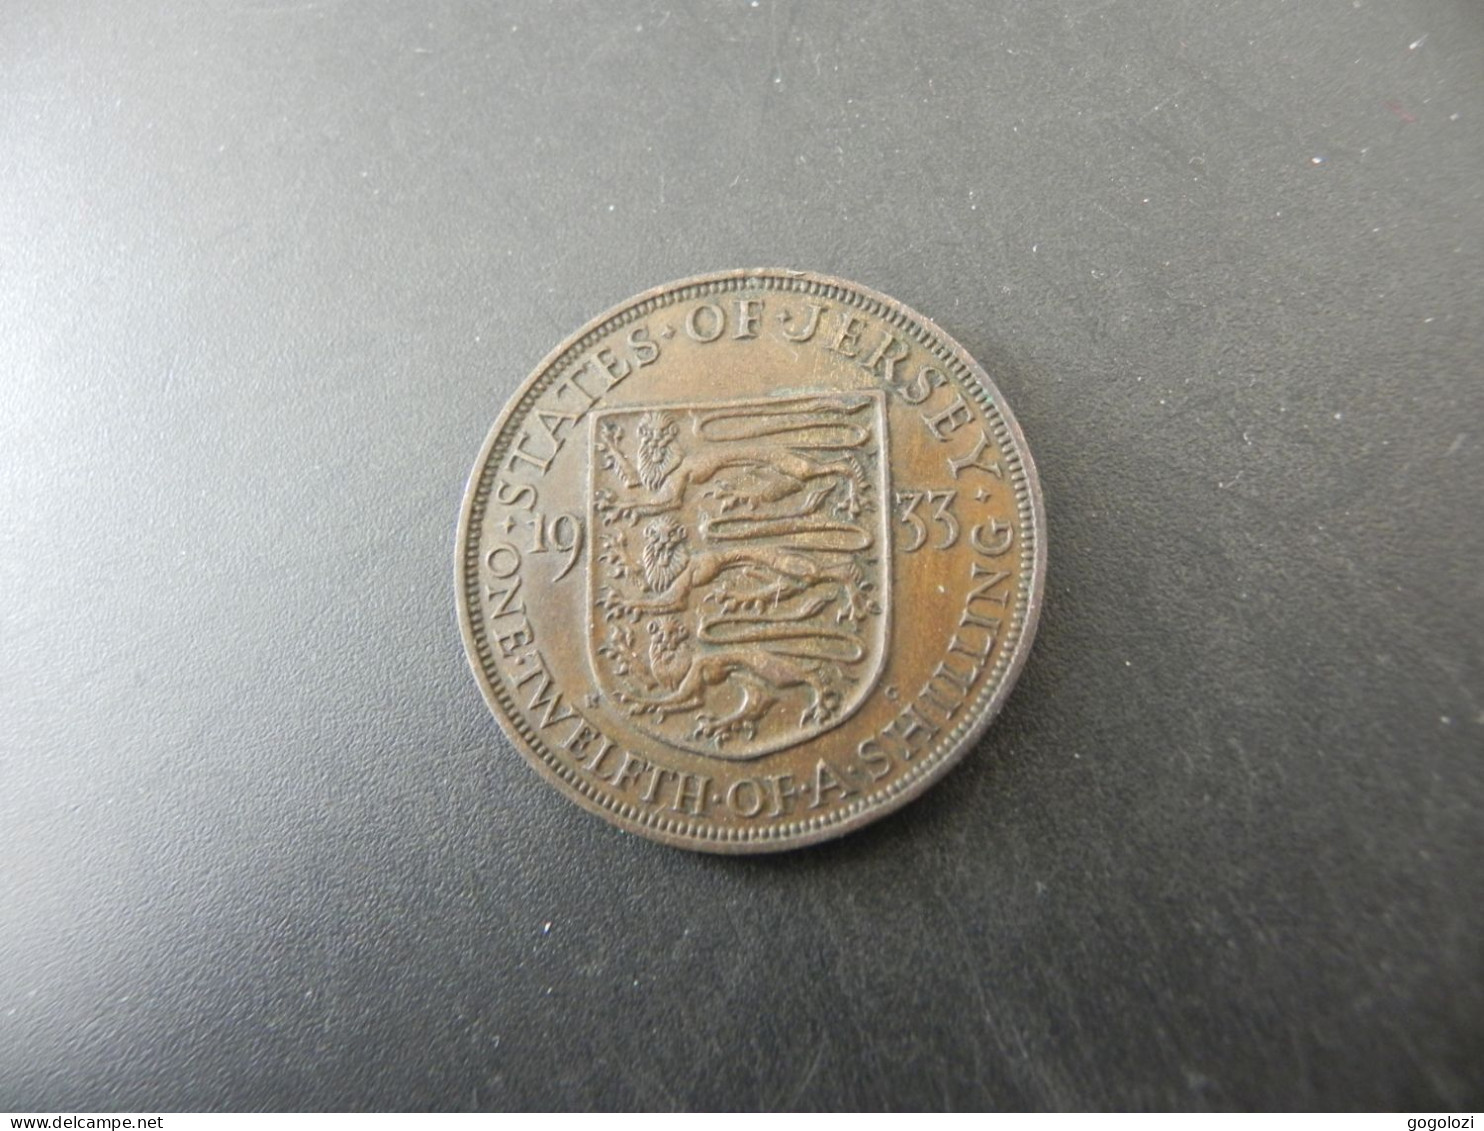 Jersey 1/12 Shilling 1933 - Jersey